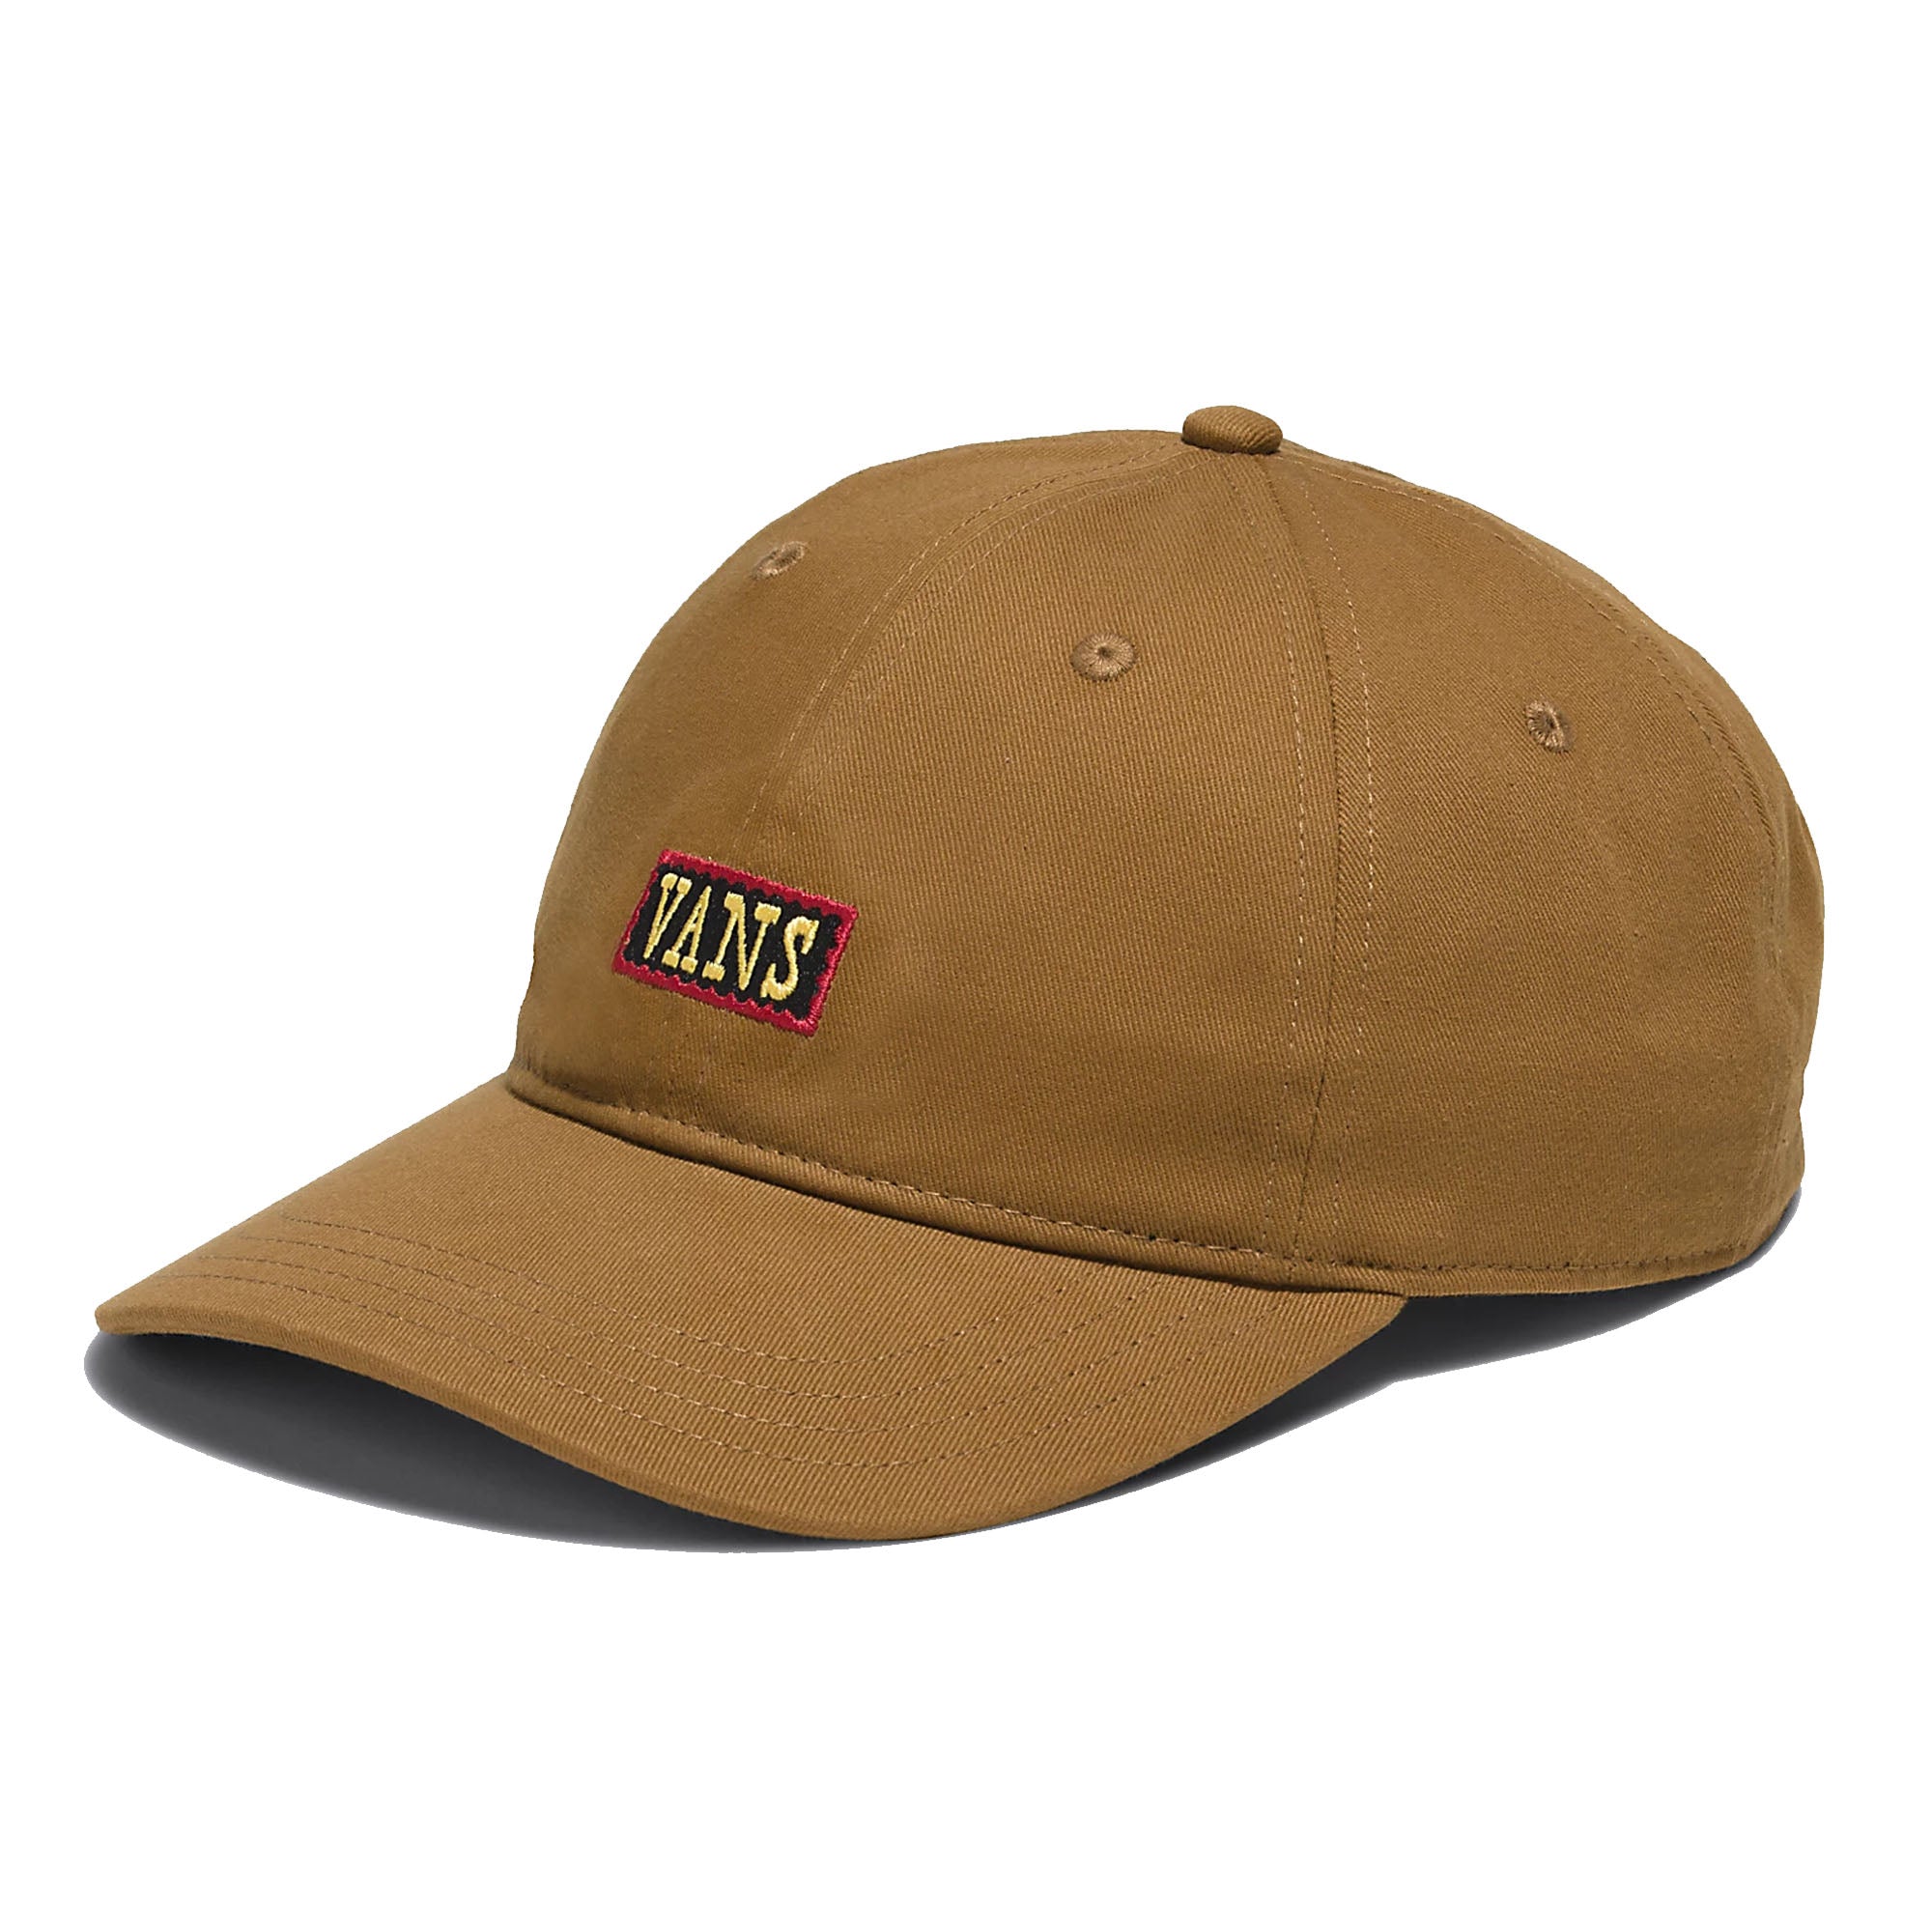 Vans Dusker Curved Bill Men's Hat